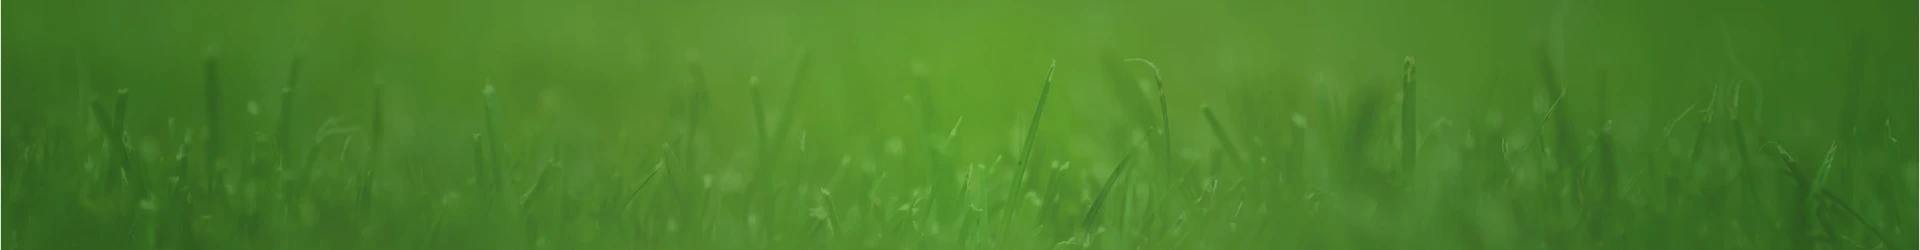 grass header background